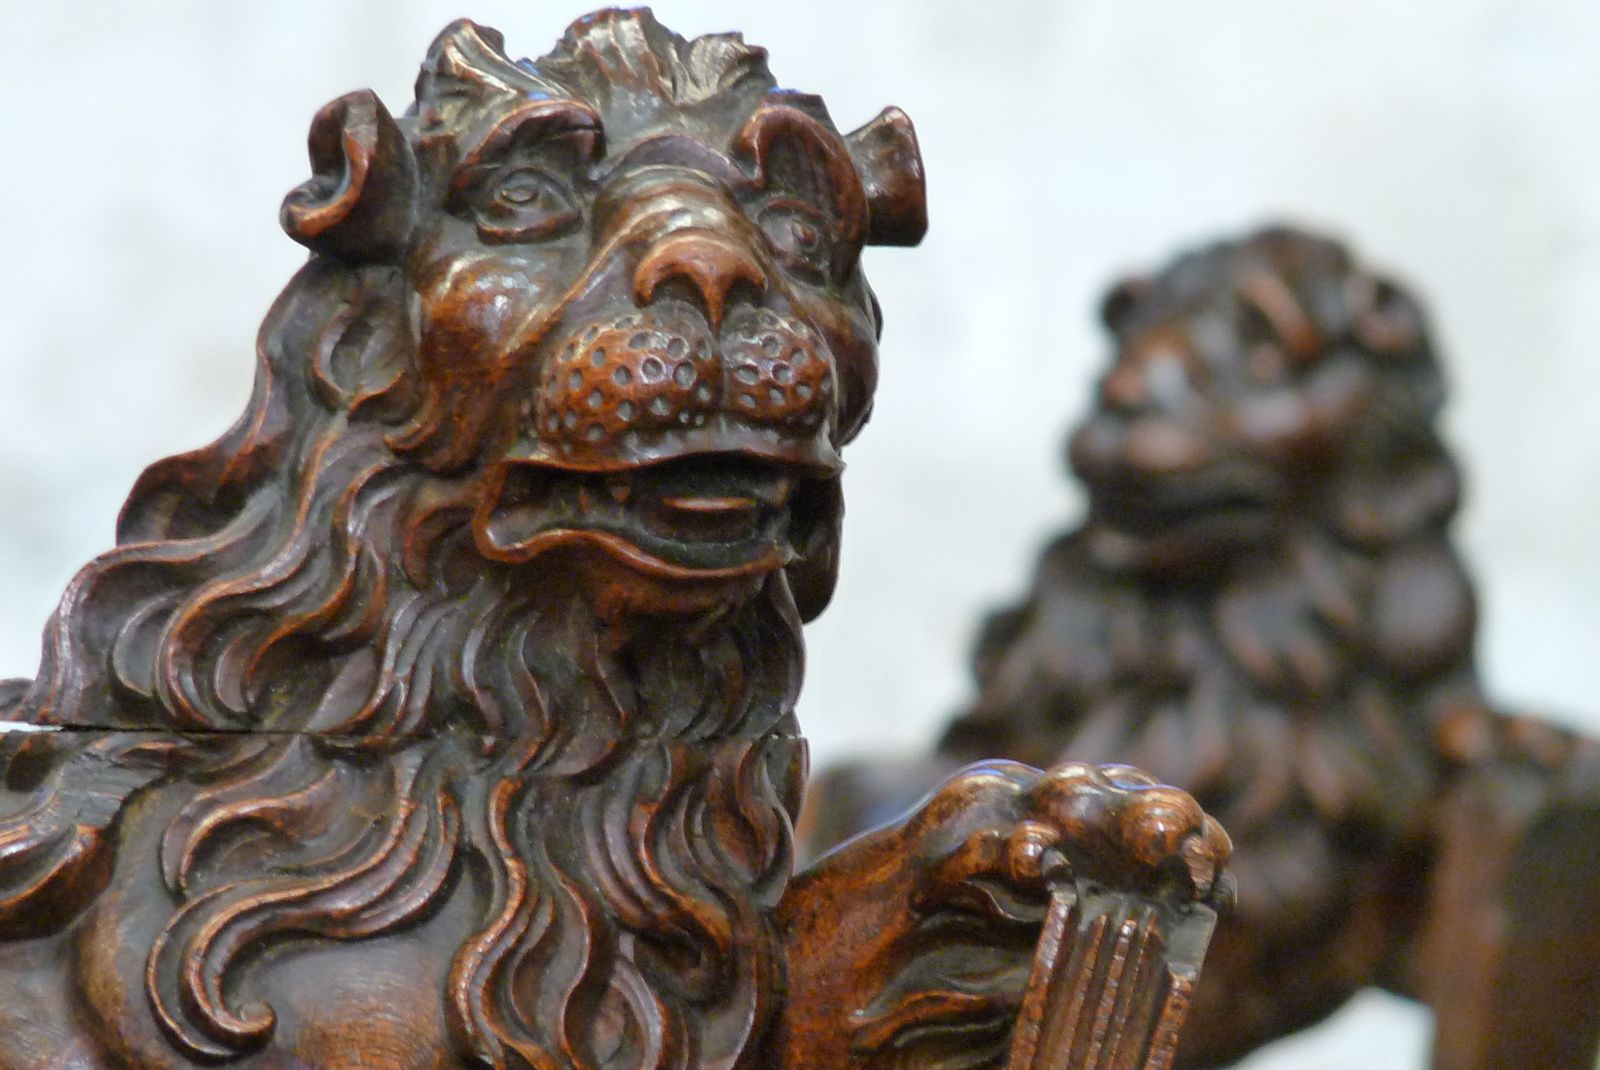 Les 46 stalles (XVIIe siècle) sont issues de Notre-Dame de Bonport. Les 12 lions symbolisent la royauté du Christ, la foi et évoquent peut-être Richard Cœur de Lion, fondateur de Bonport en 1190. Les stalles furent classées MH en 1907 (cliché Armand Launay, 2013).